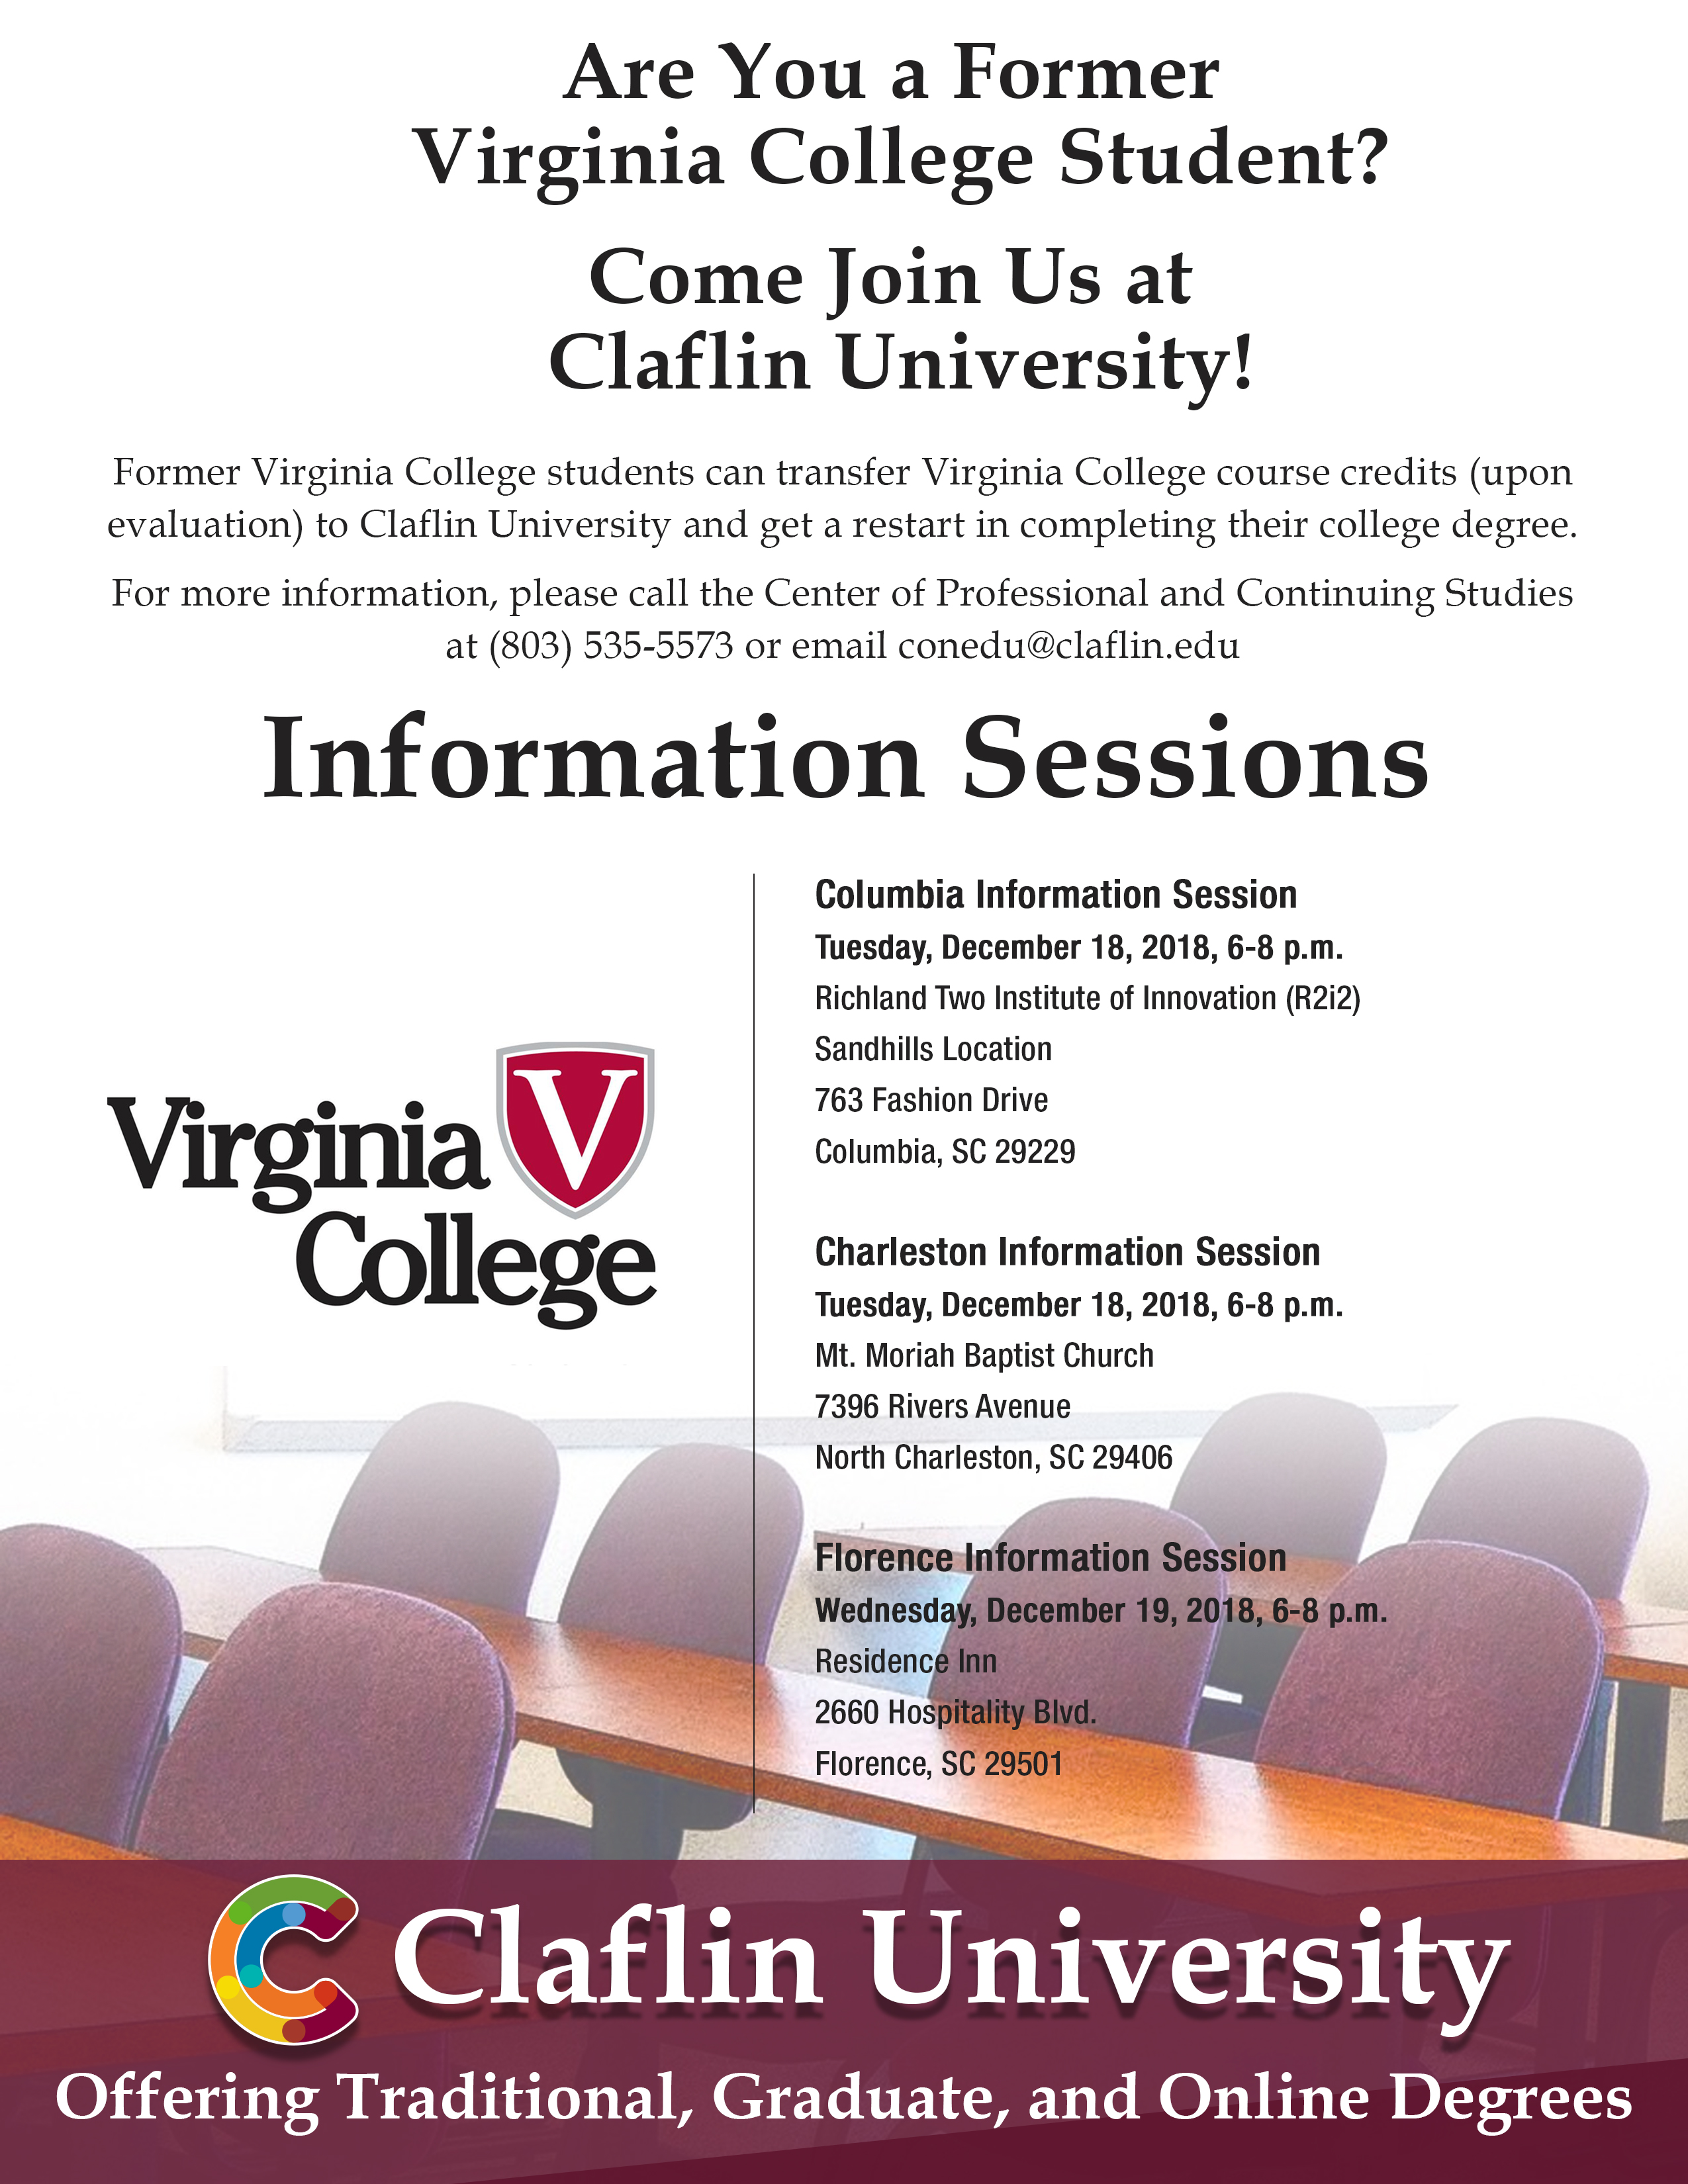 Virginia College Recruitment Reception